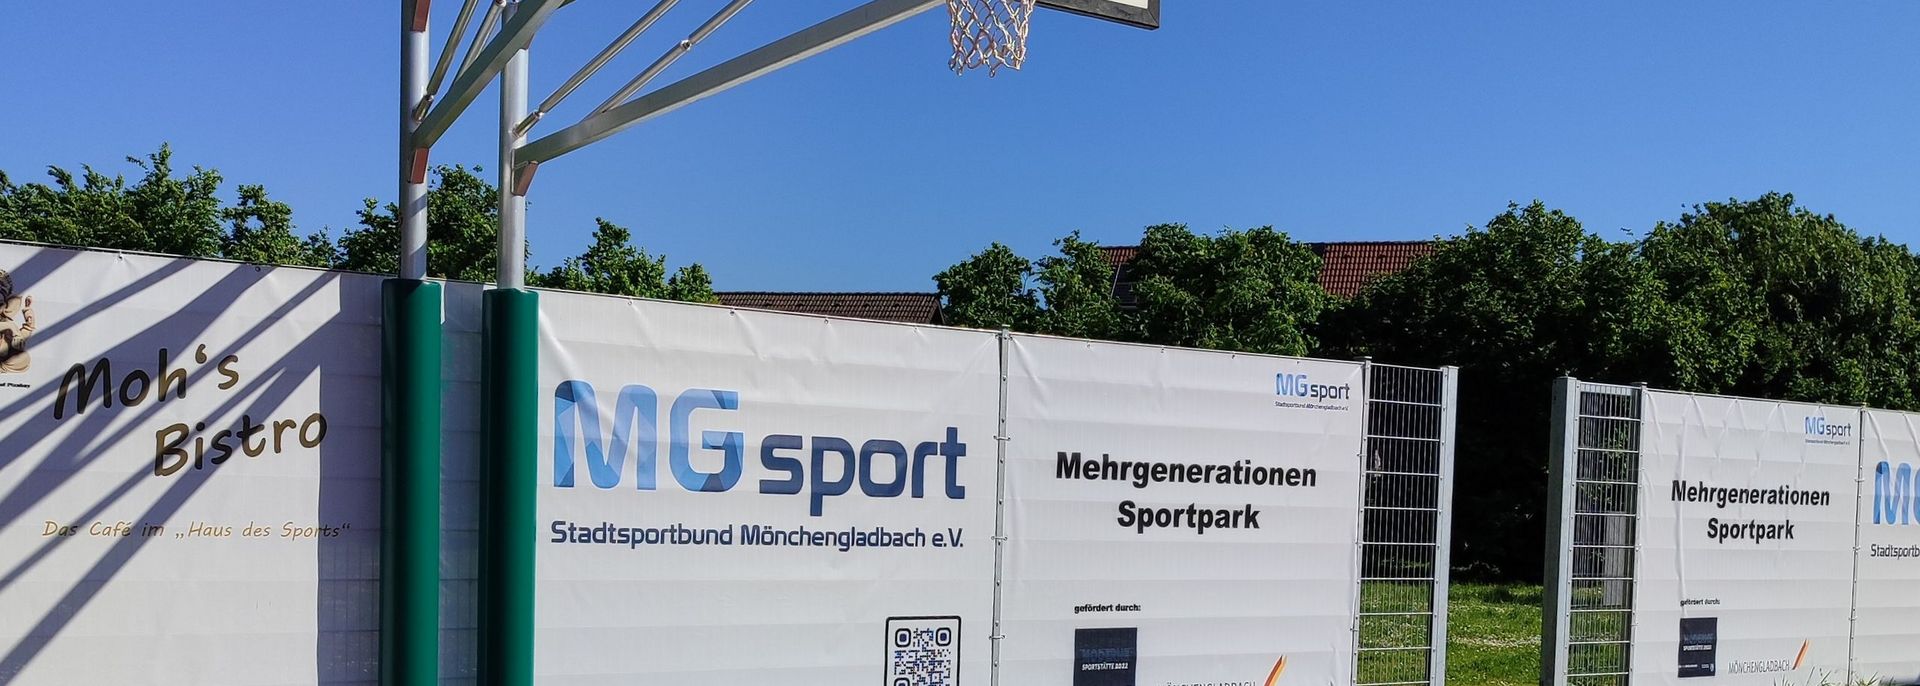 Stadtsportbund Mönchengladbach e.V.